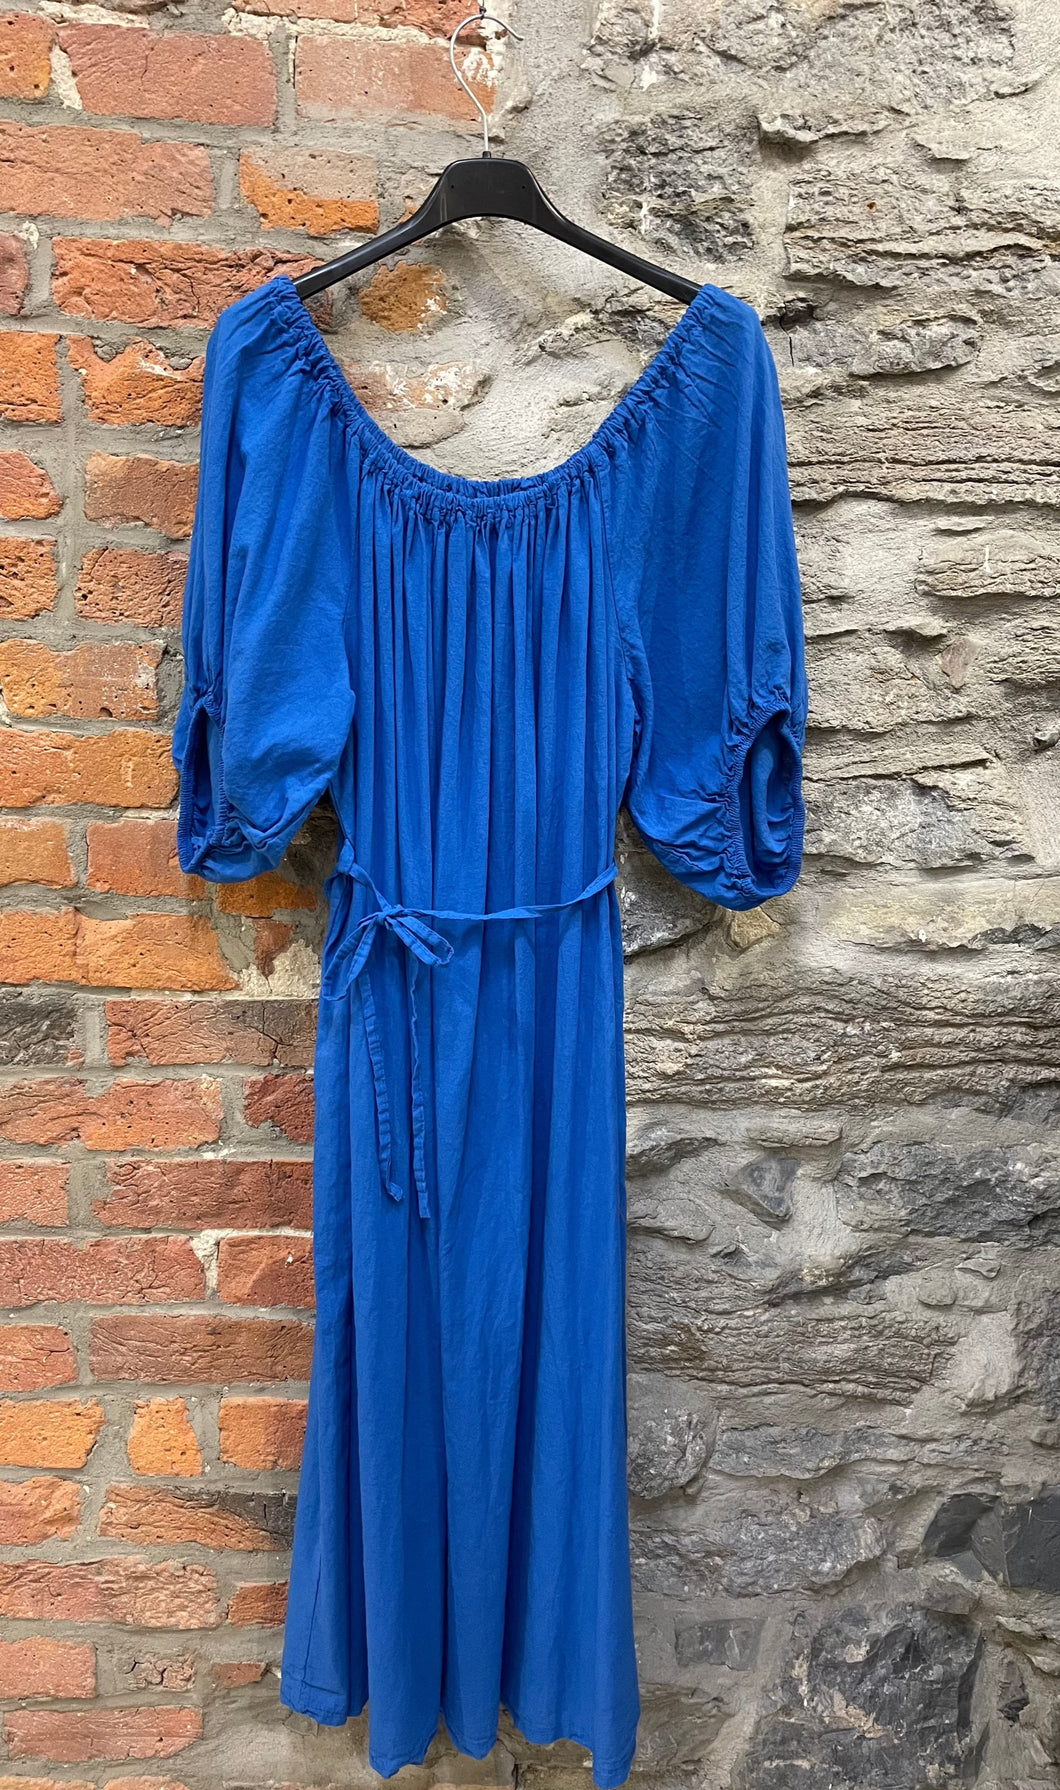 EL- 82176 Robe / Dress